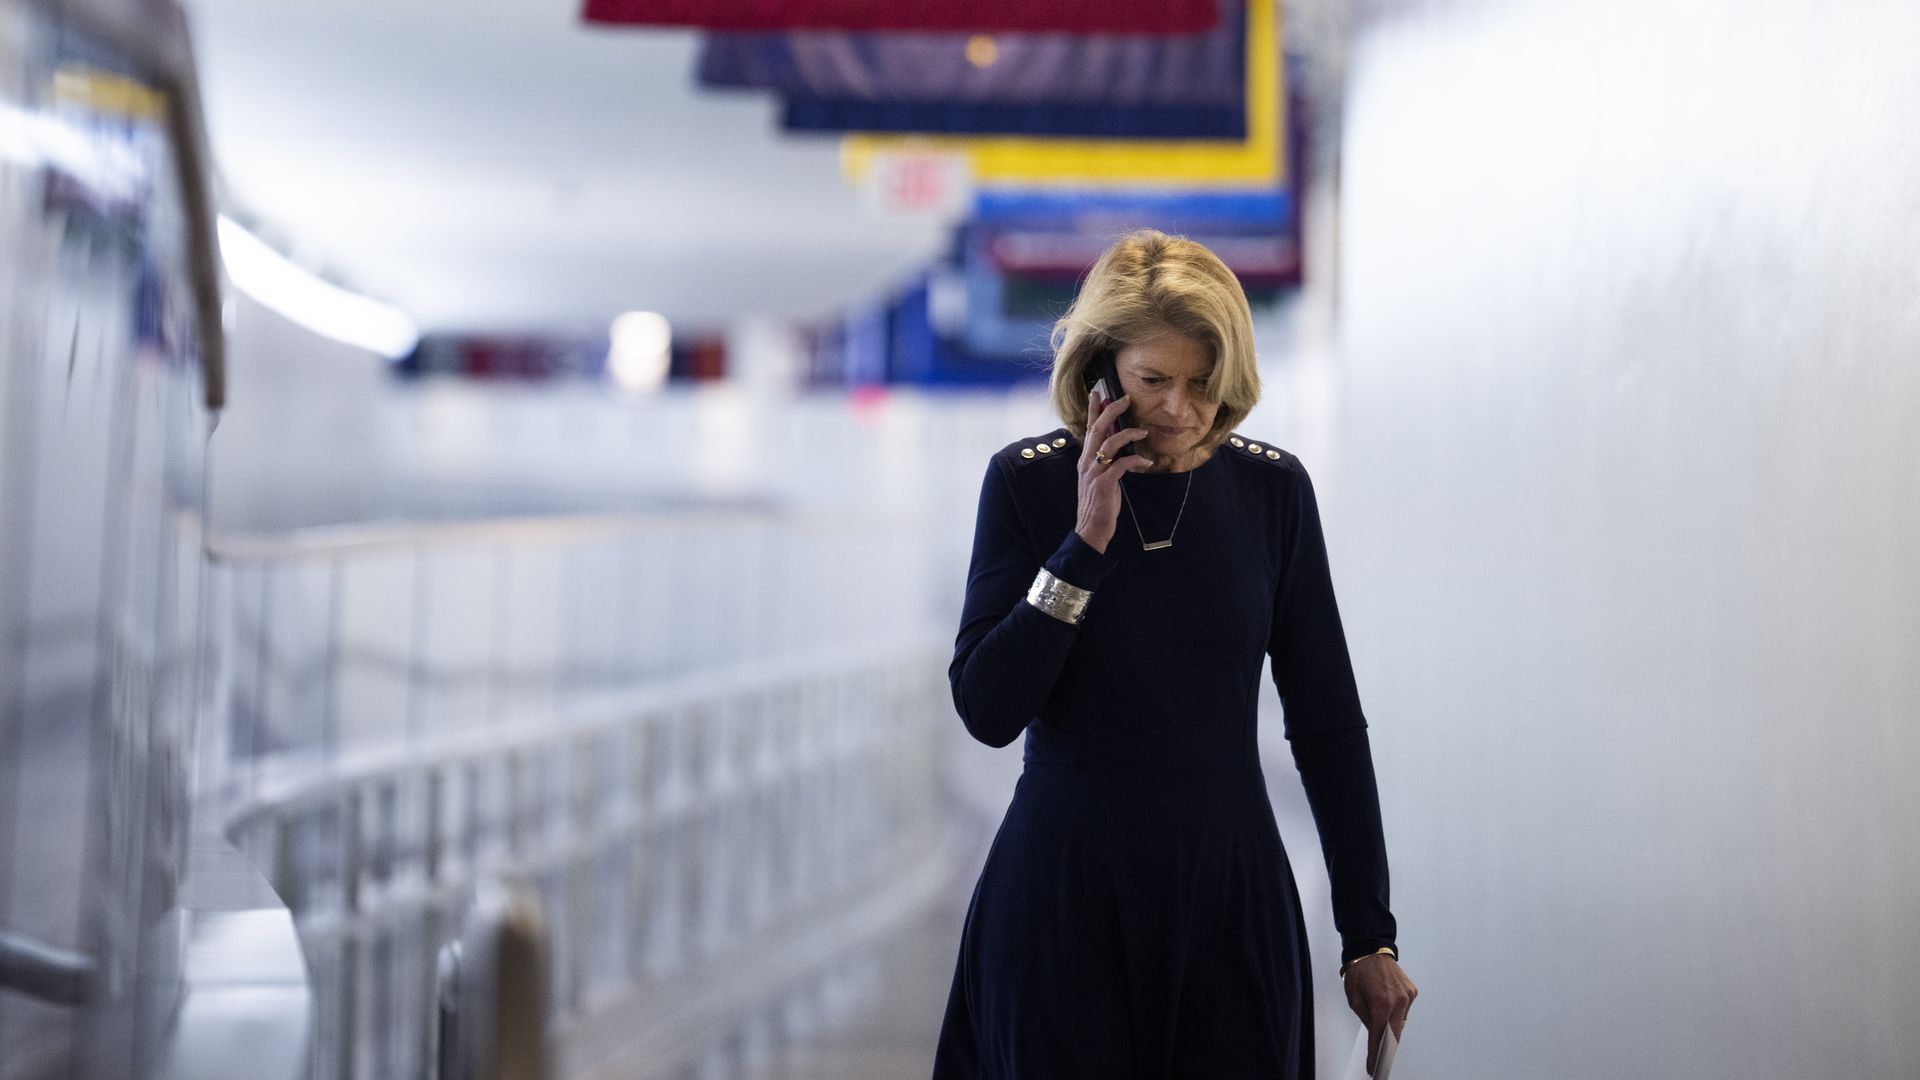 Sen. Lisa Murkowski is seen walking through the Capitol subway area.